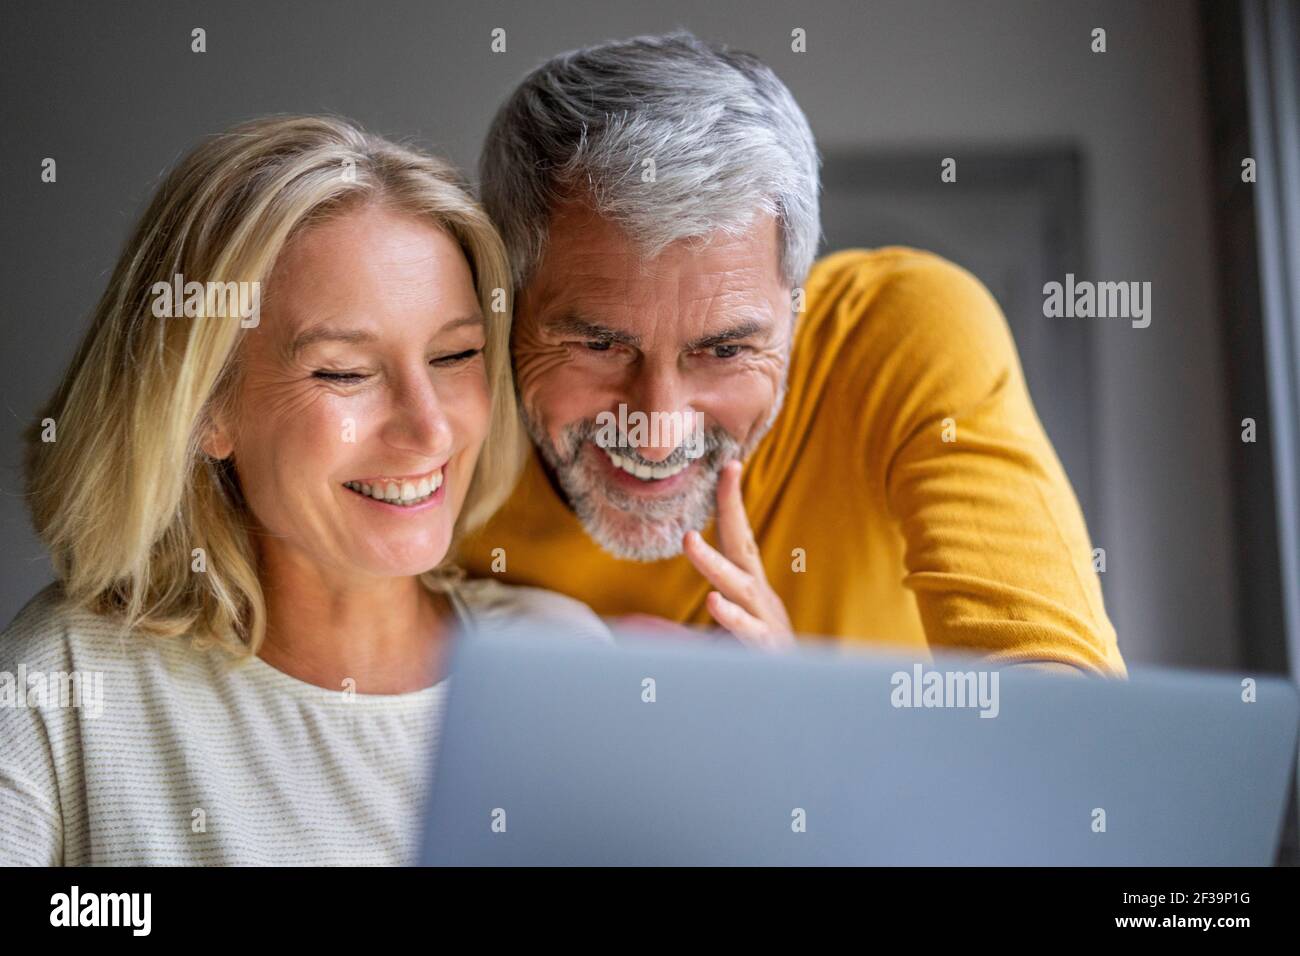 Lächelnde älteres Paar mit laptop Stockfoto